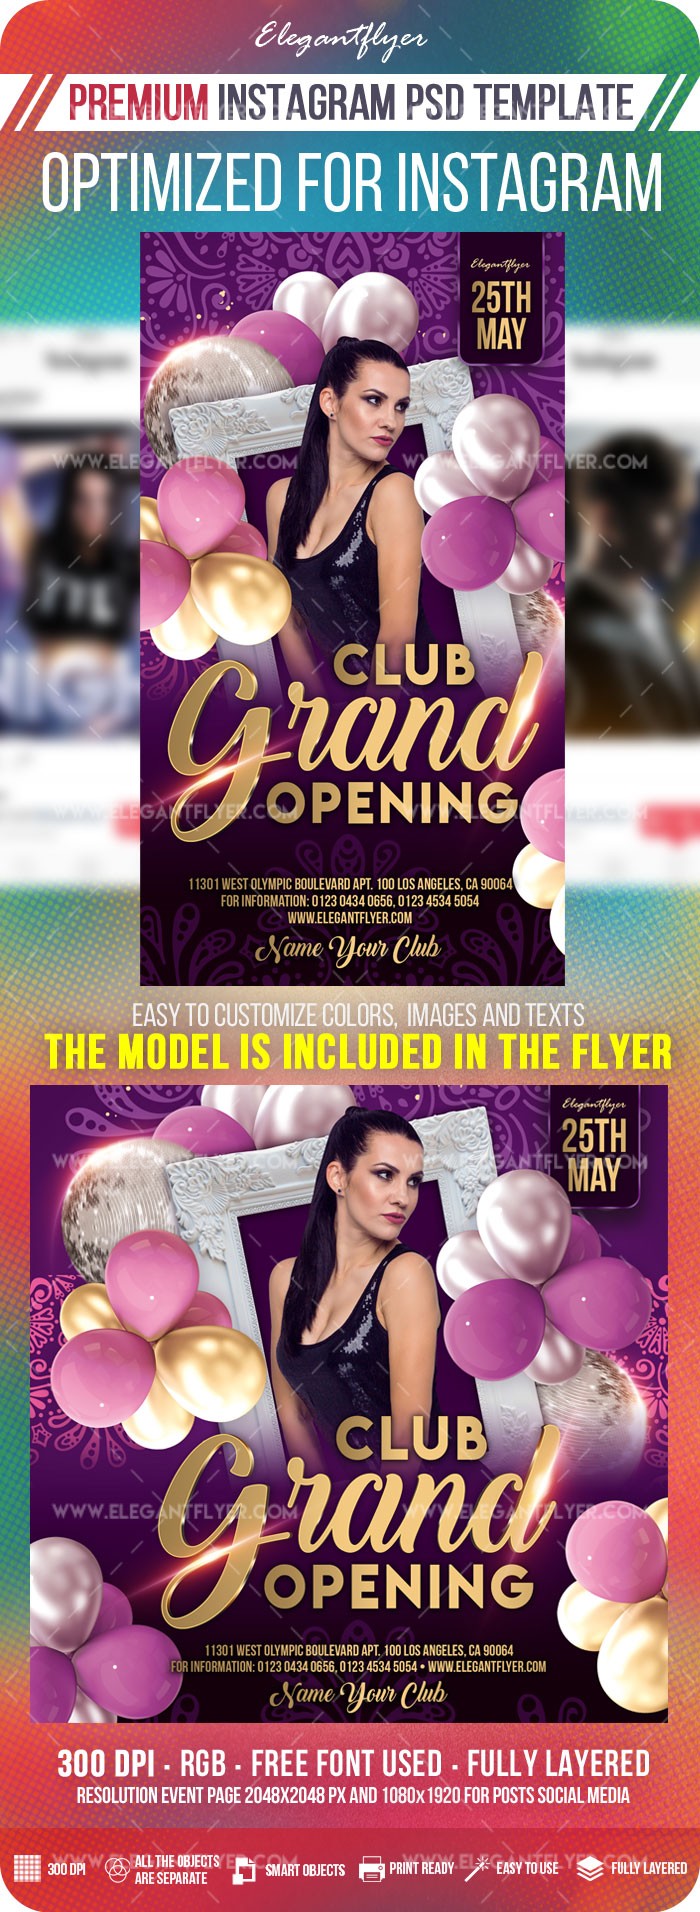 Gran inauguración de Club en Instagram by ElegantFlyer